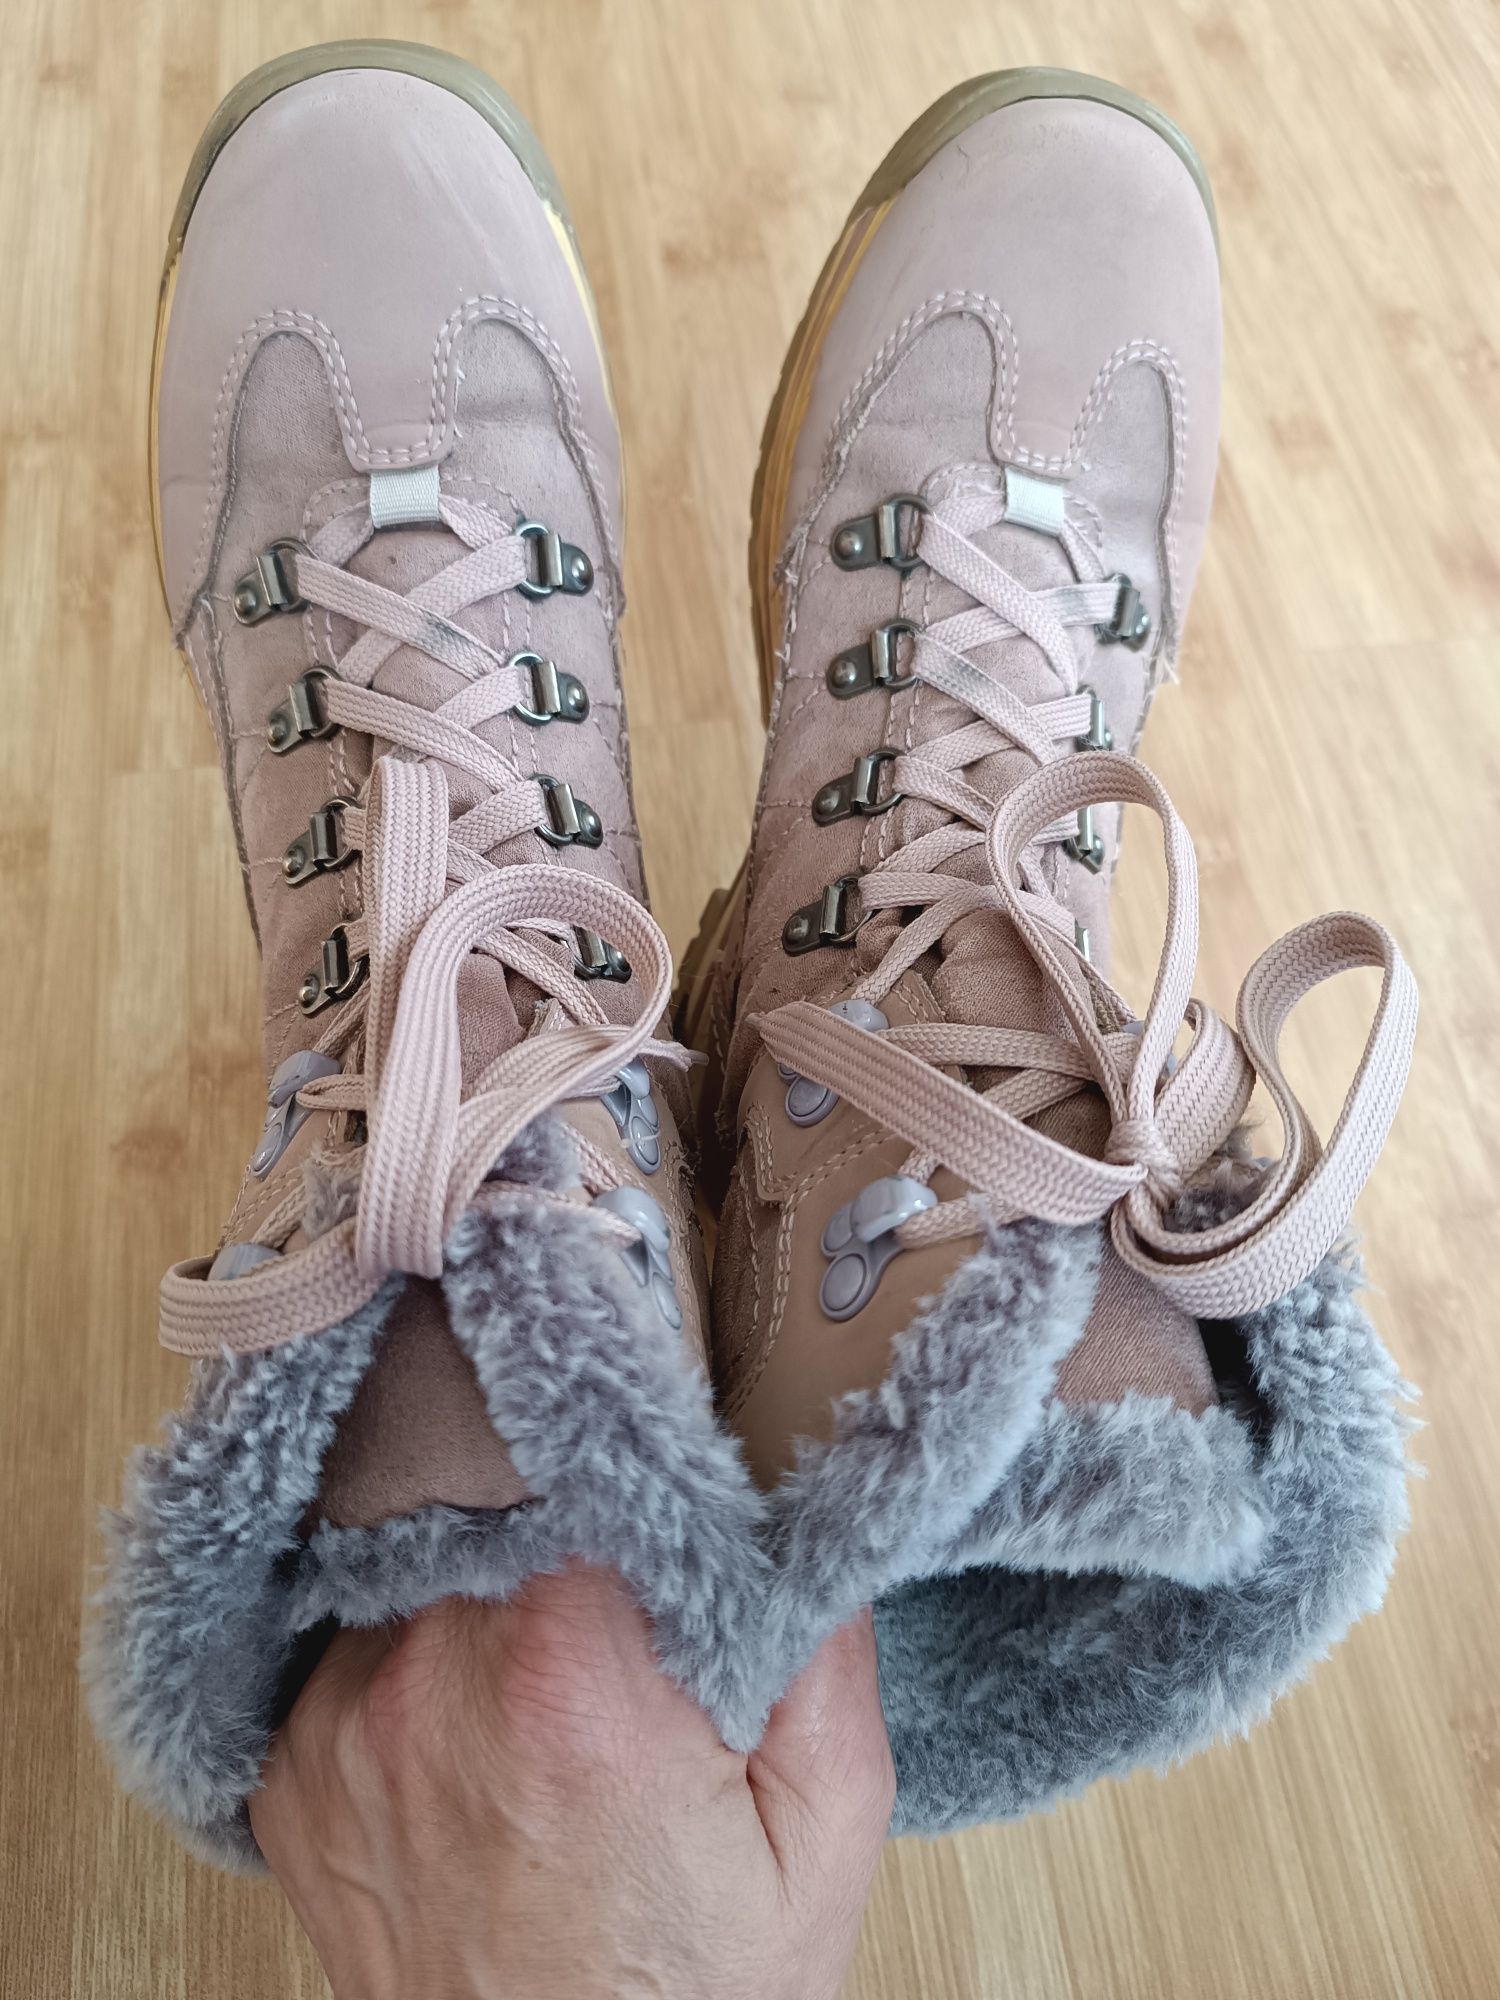 Осінньо-зимові ботинки Cortina 38-39, чоботи, сапожки